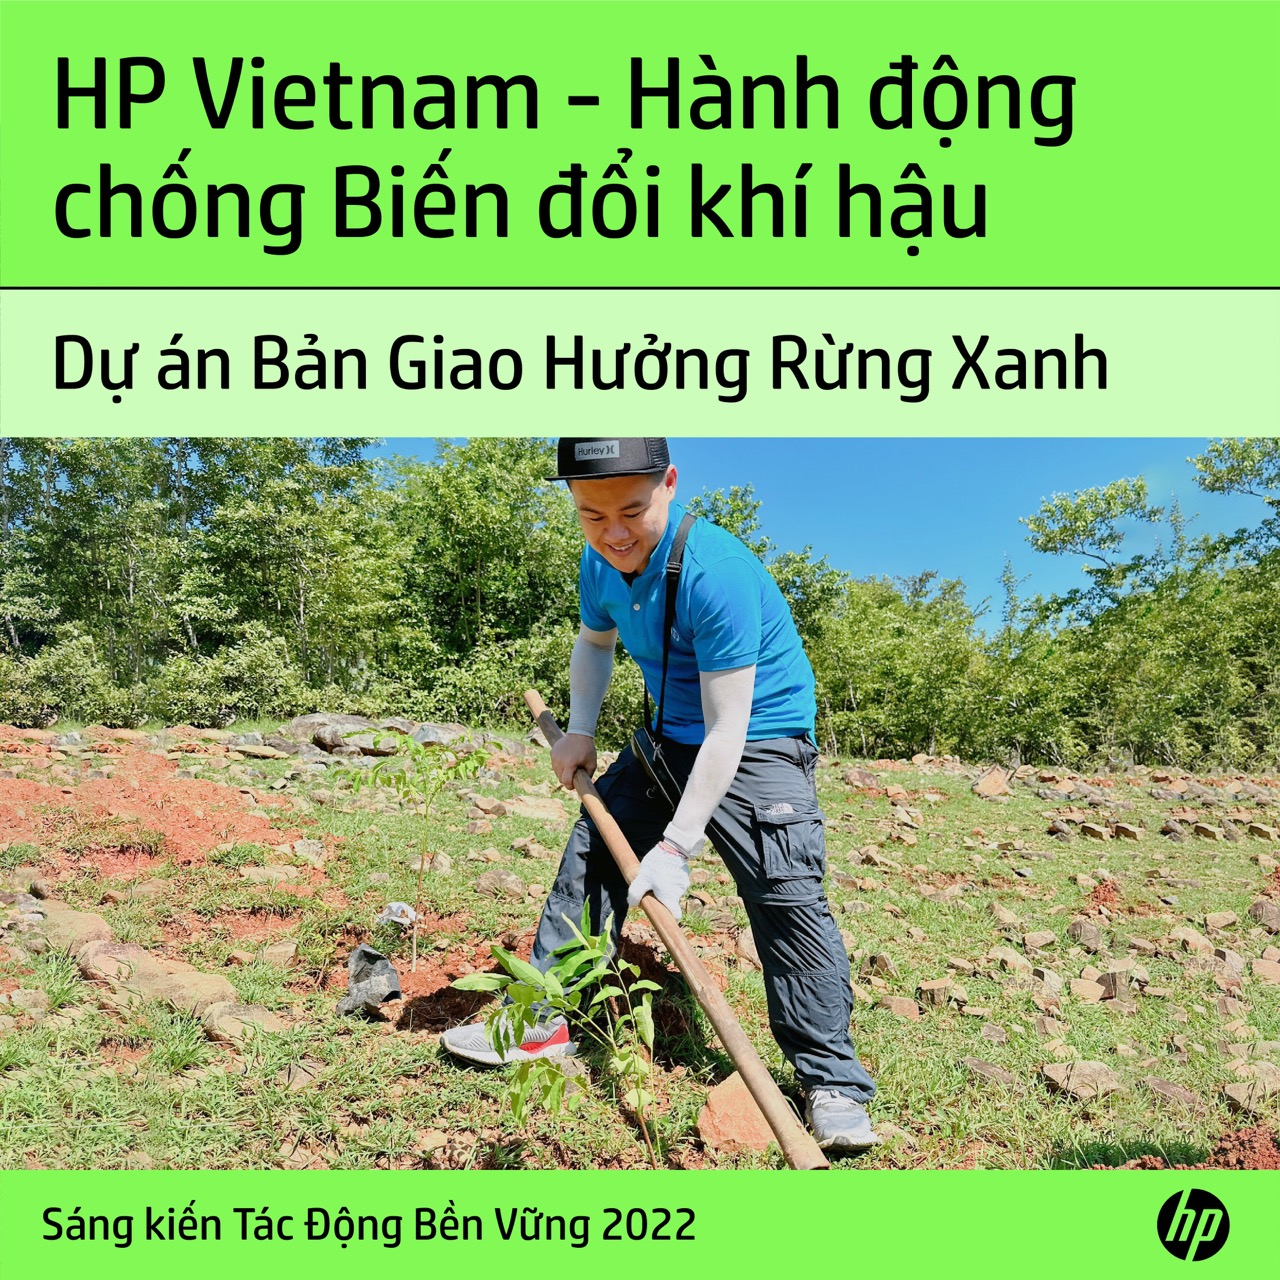 HP Việt Nam tiếp tục sứ mệnh “Xanh” trong hành trình phát triển bền vững